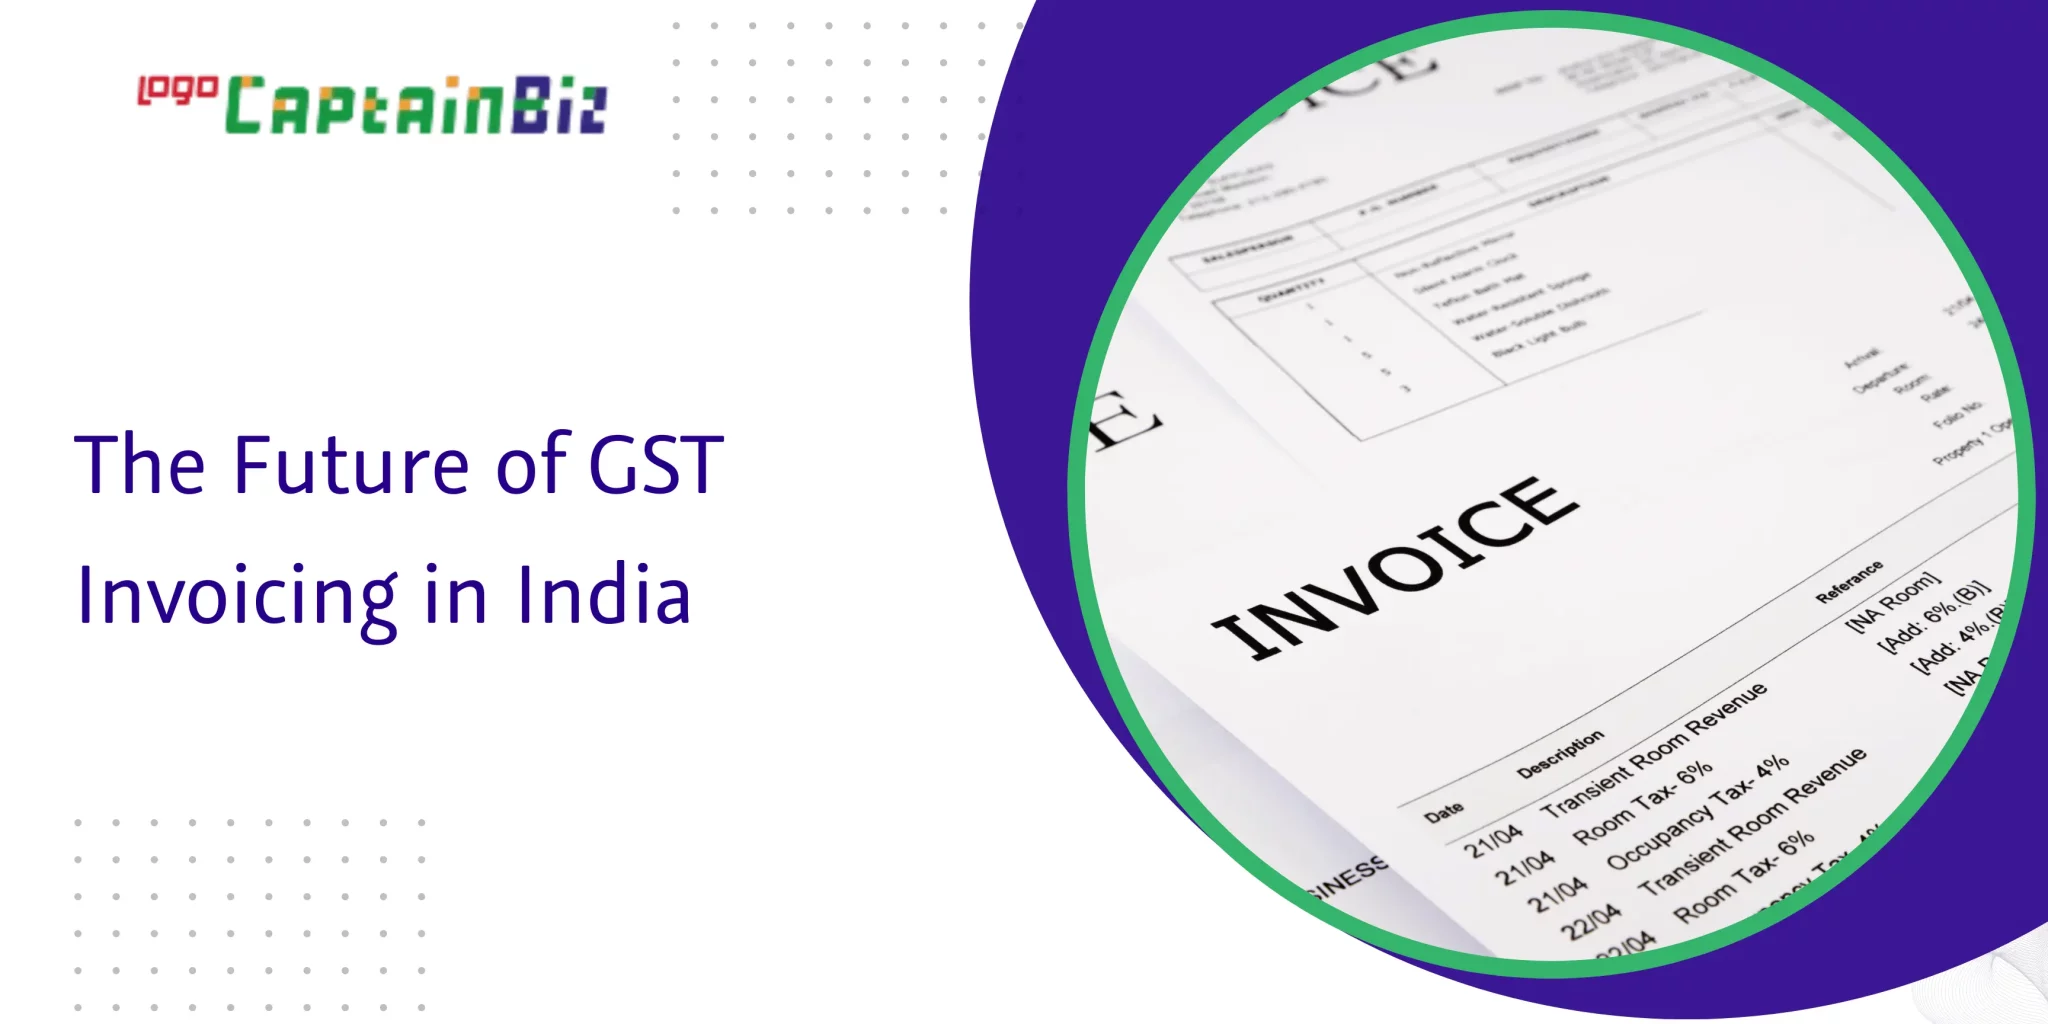 captainbiz the future of gst invoicing in india